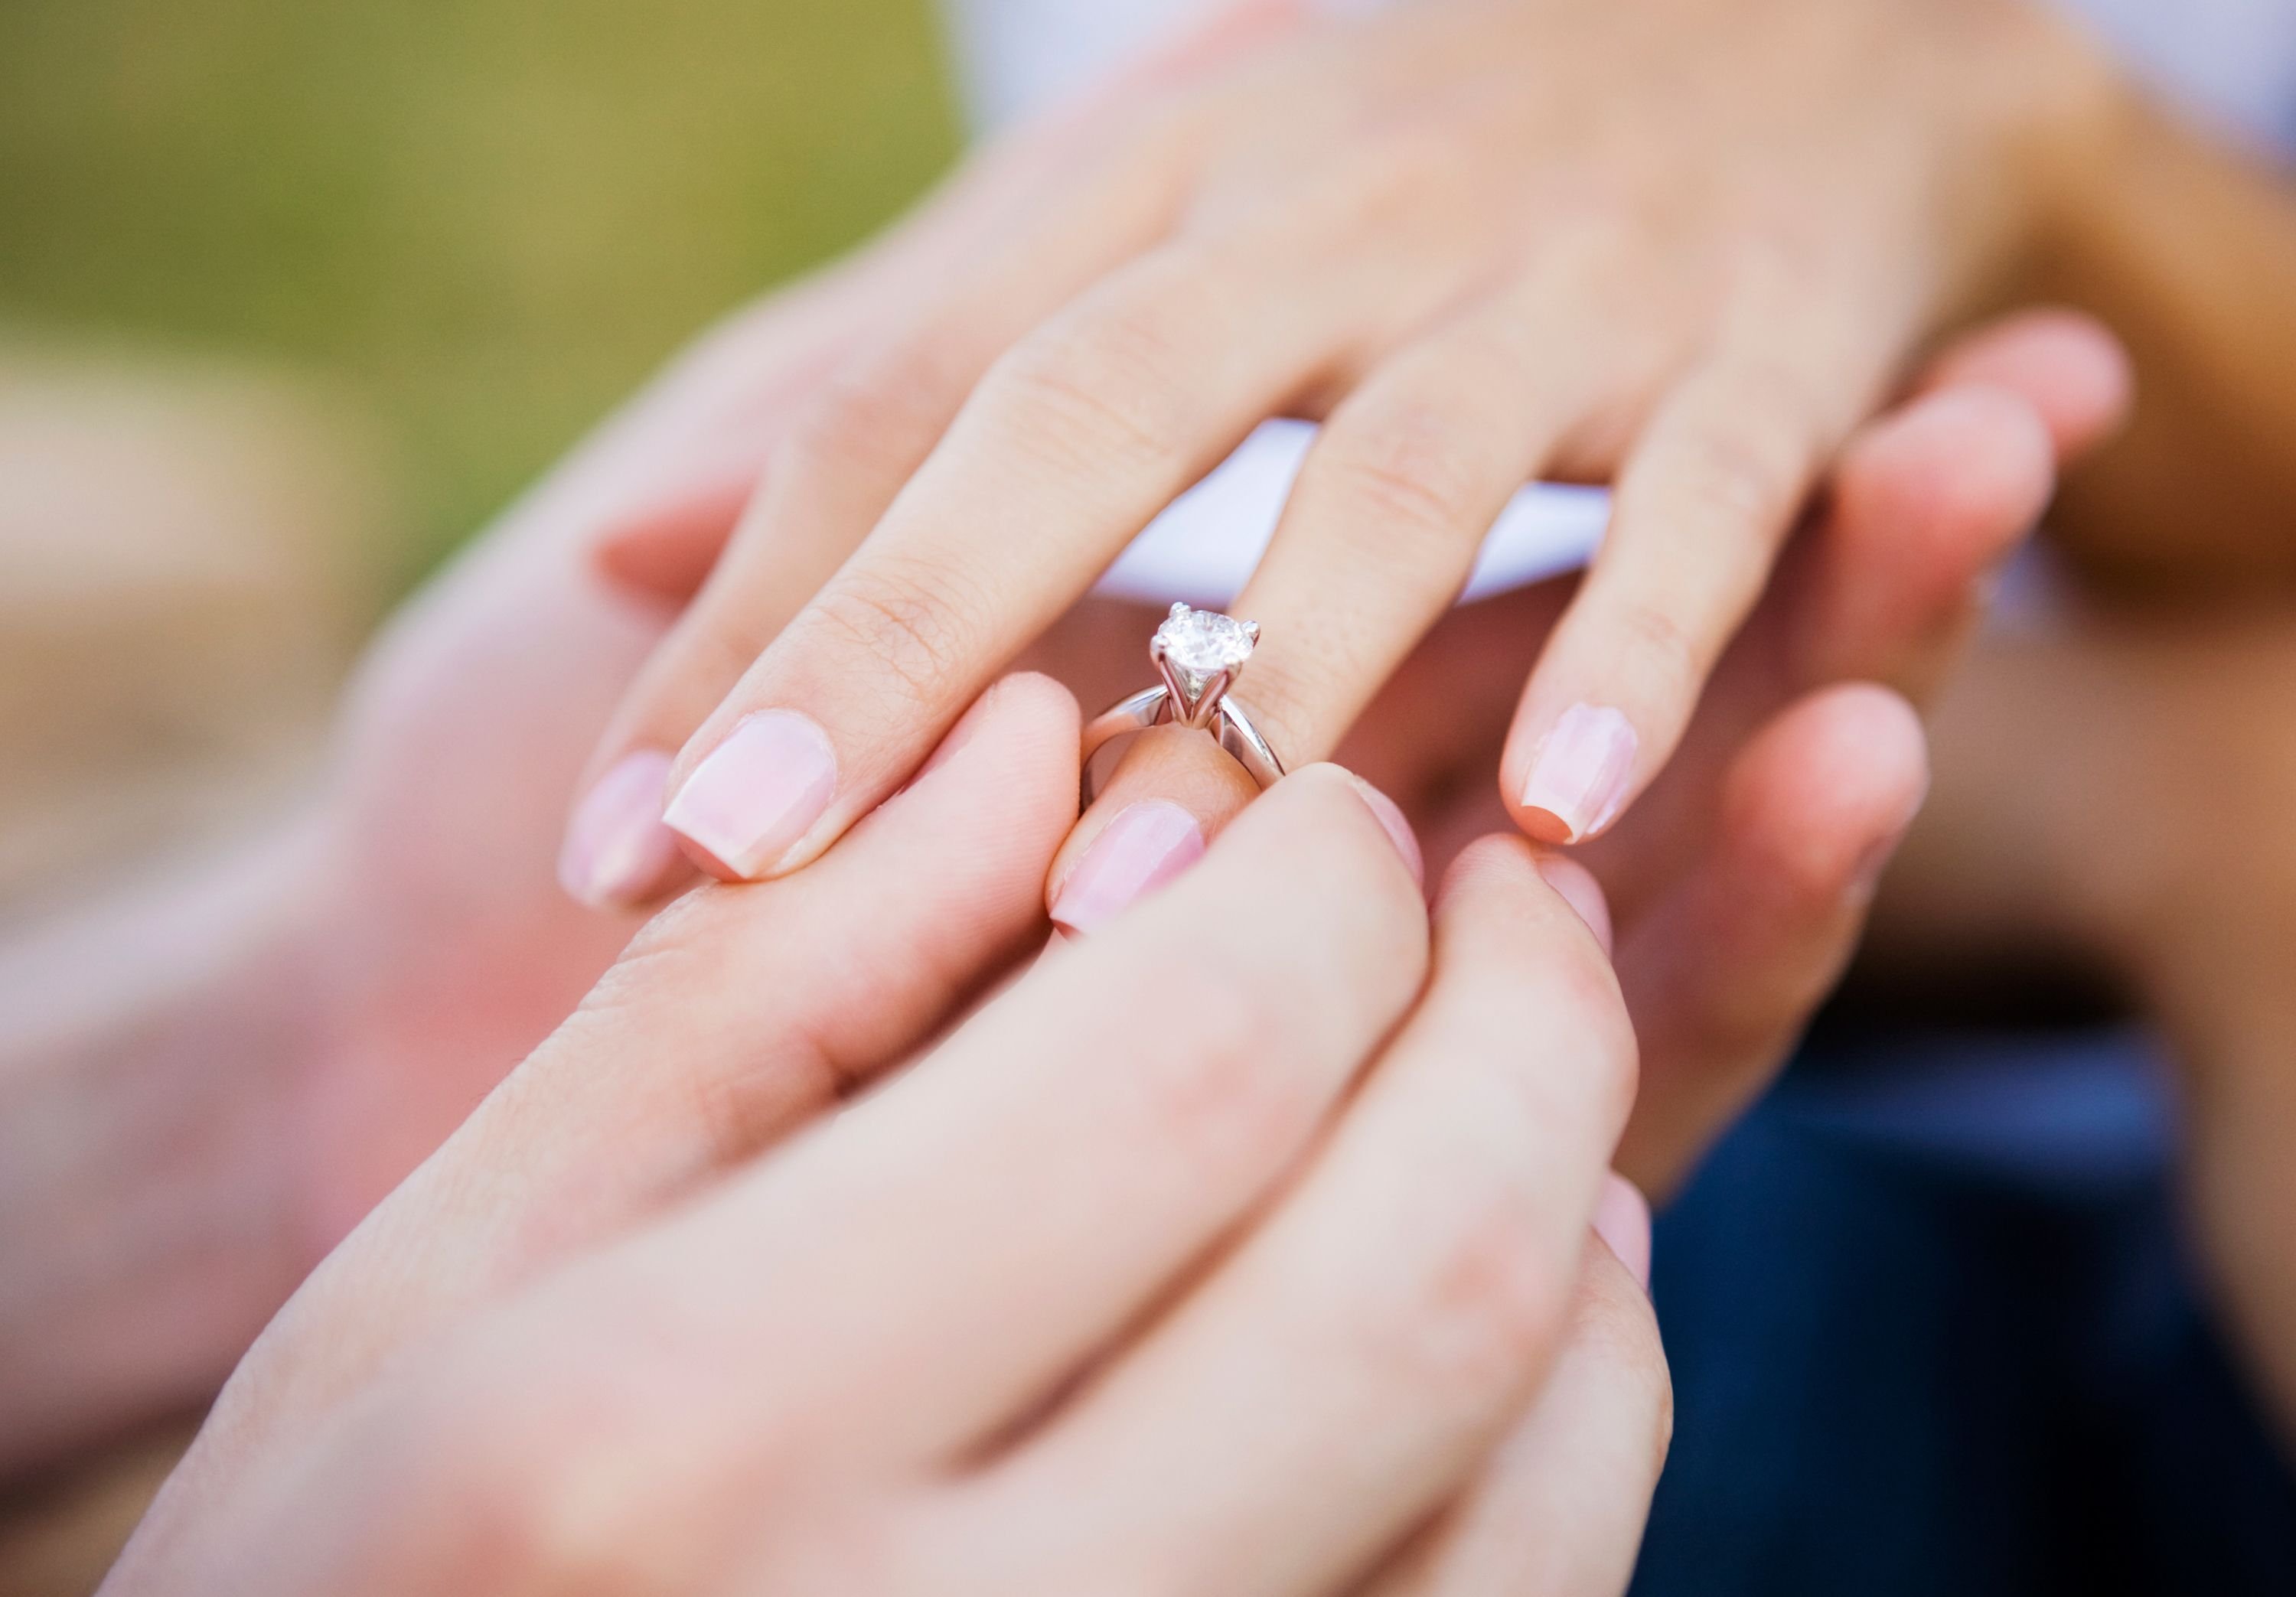 Сонник замужество. Надевает кольцо. Обручальные и помолвочные кольца. Предложение руки и сердца. Обручальное кольцо на пальце.